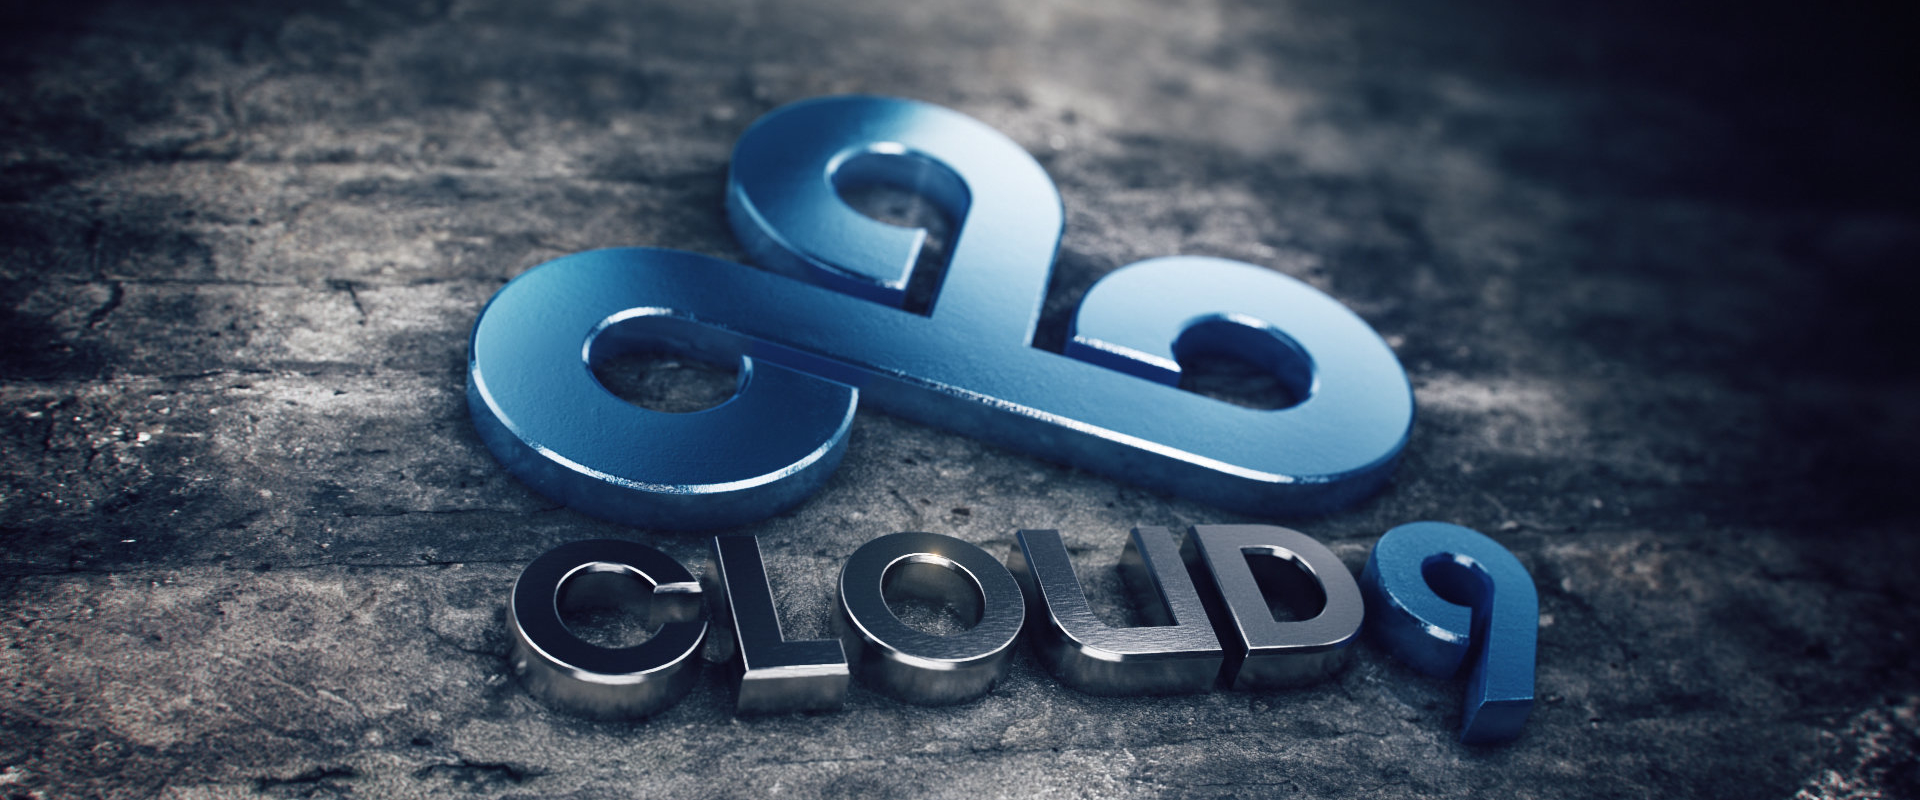 Nagypályás befektetők érkeztek a Cloud9-hoz - új korszakba léphet a csapat